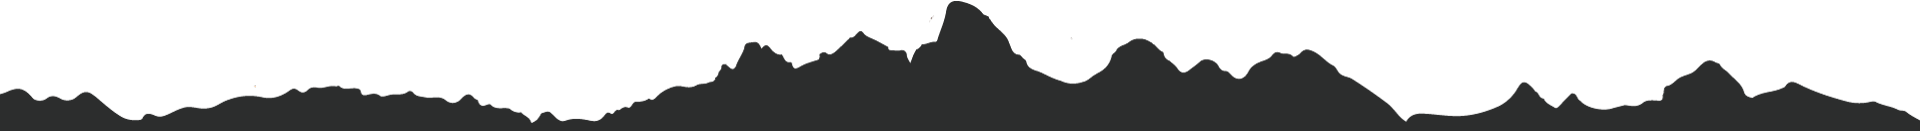 black solhouette of Tetons